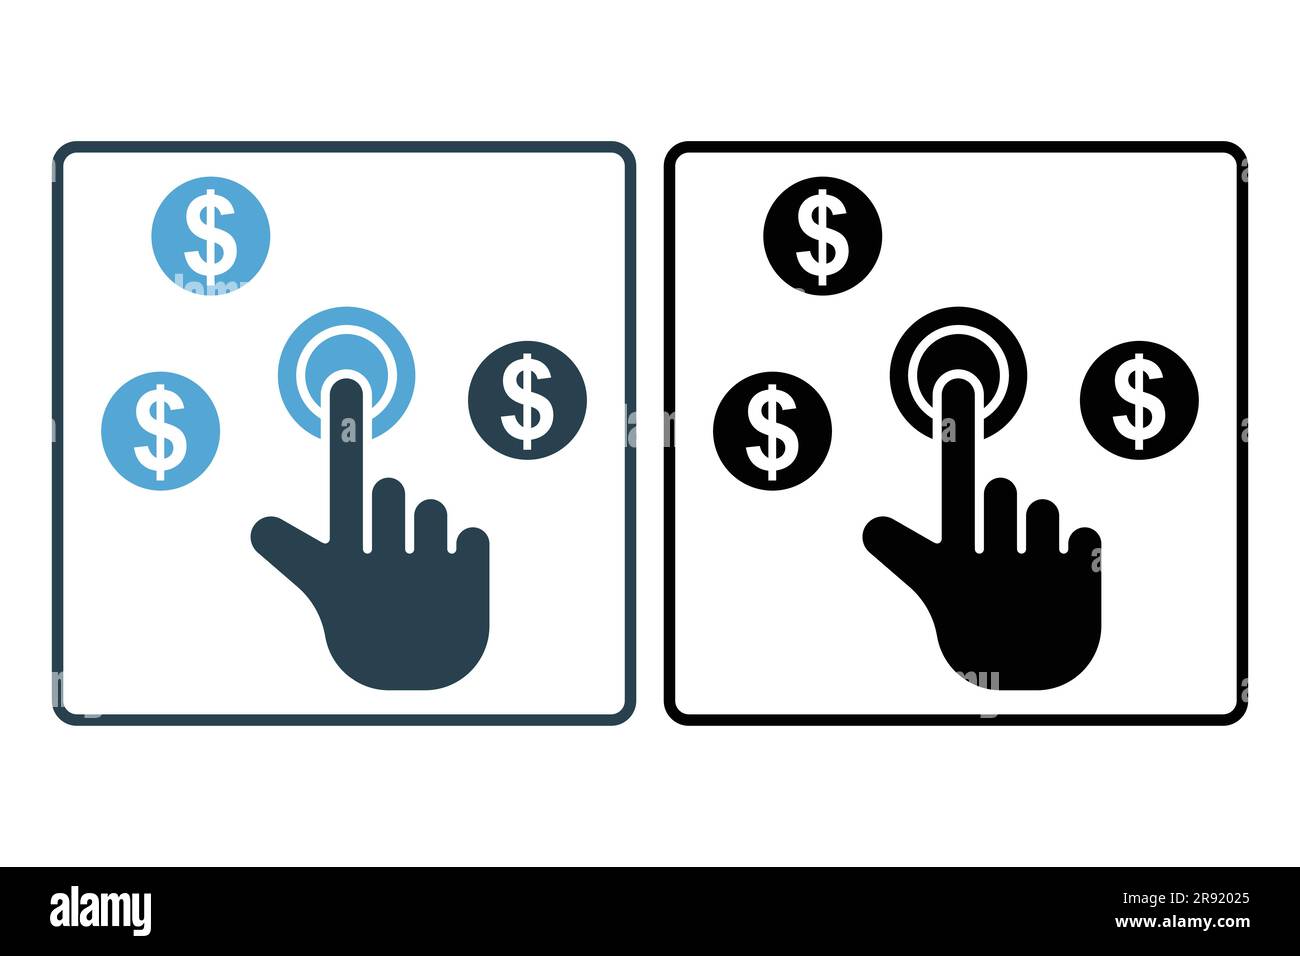 Symbol für Bezahlung pro Klick. Handberührung mit Dollar, klicken Sie auf Money seo. Solides Icon-Design. Einfache Vektorkonstruktion editierbar Stock Vektor